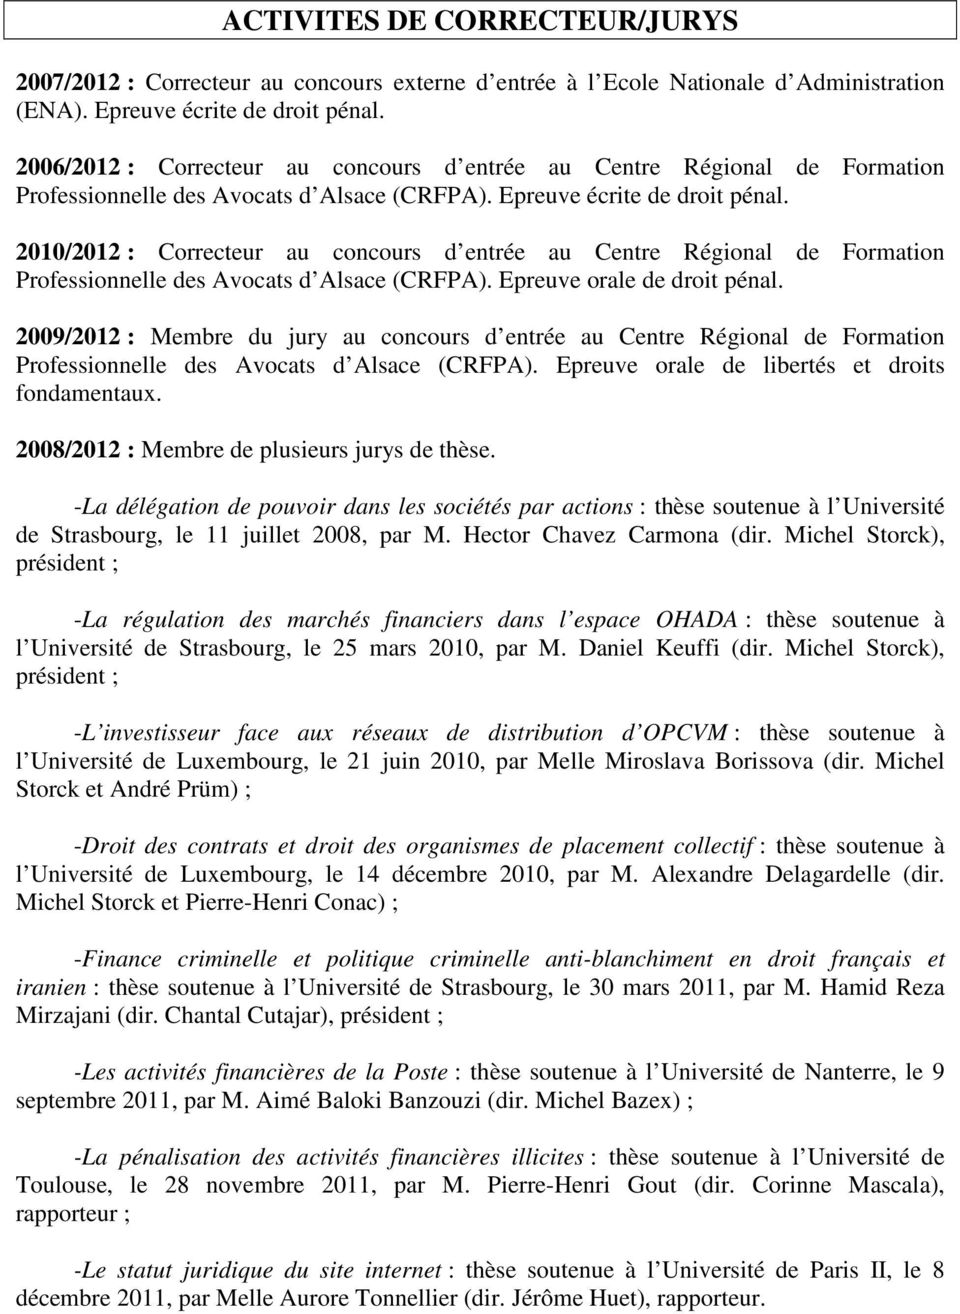 2010/2012 : Correcteur au concours d entrée au Centre Régional de Formation Professionnelle des Avocats d Alsace (CRFPA). Epreuve orale de droit pénal.